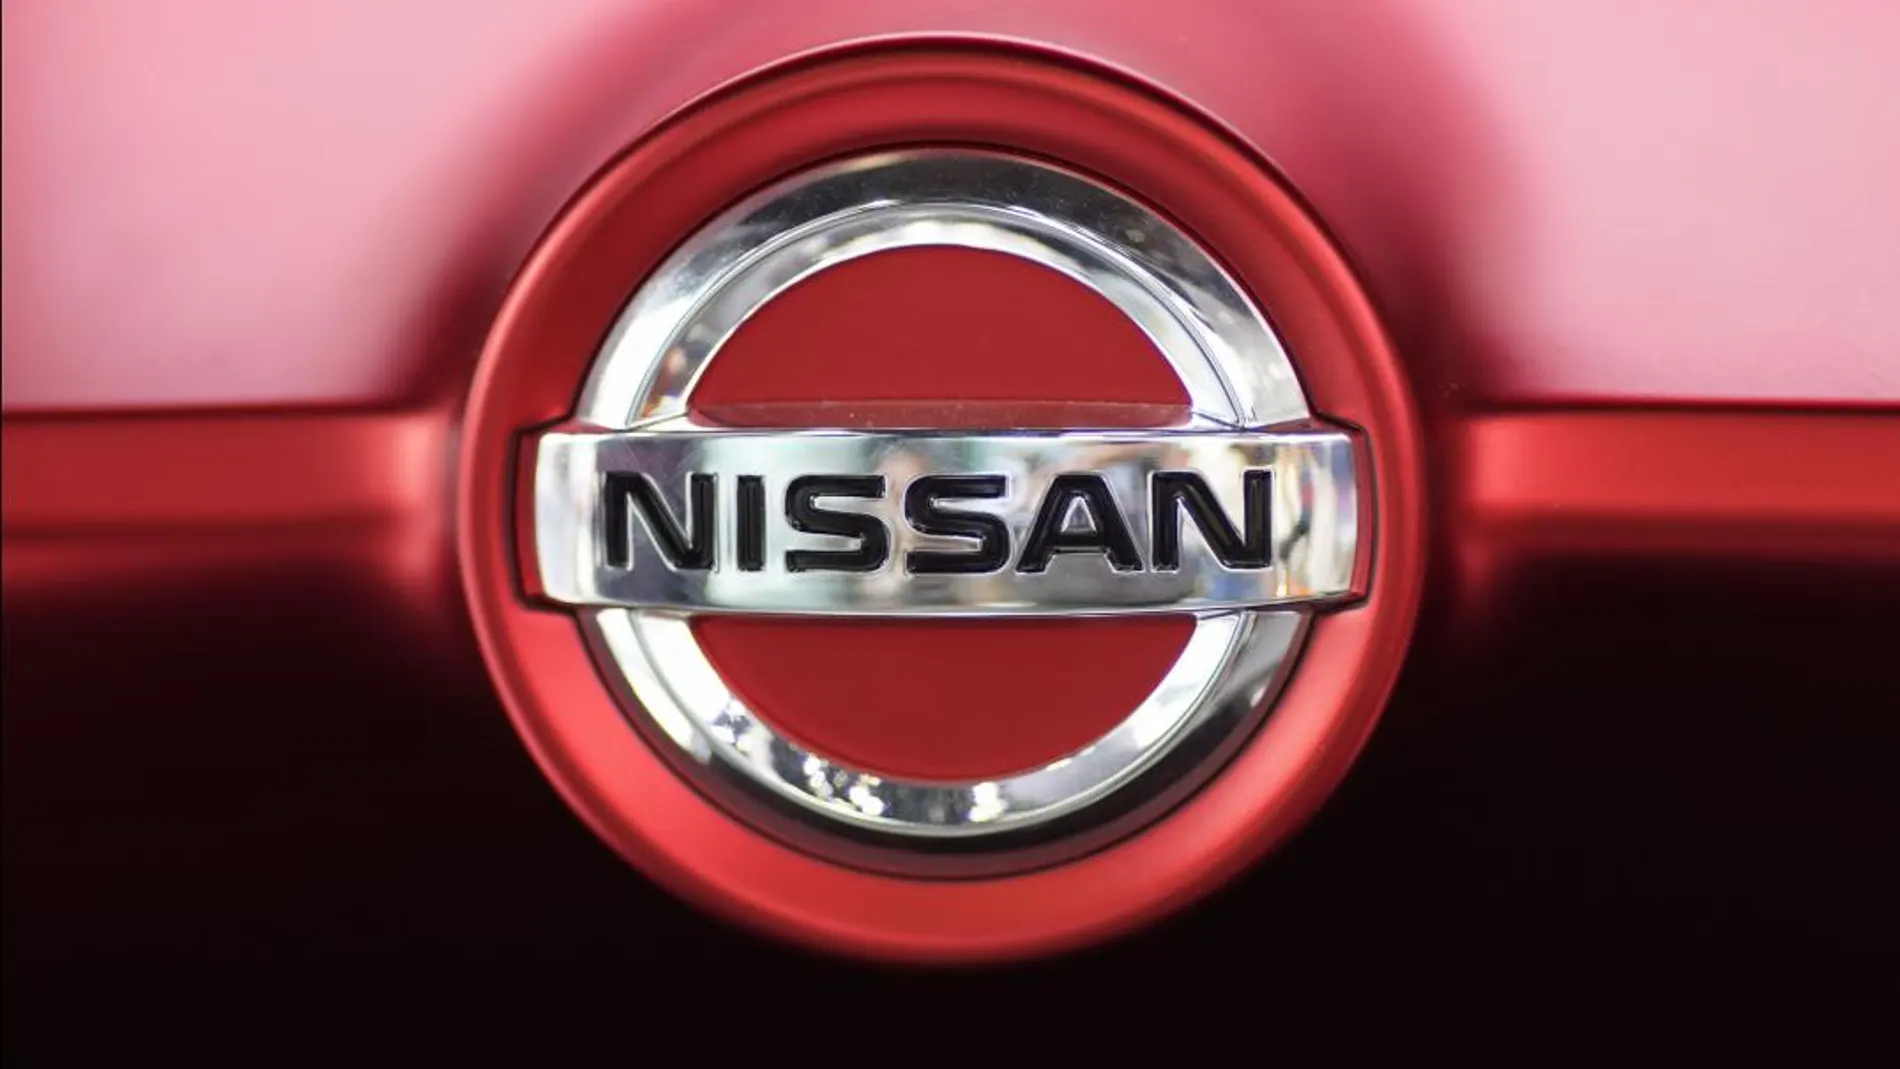 Nissan admite que ha falsificado los datos